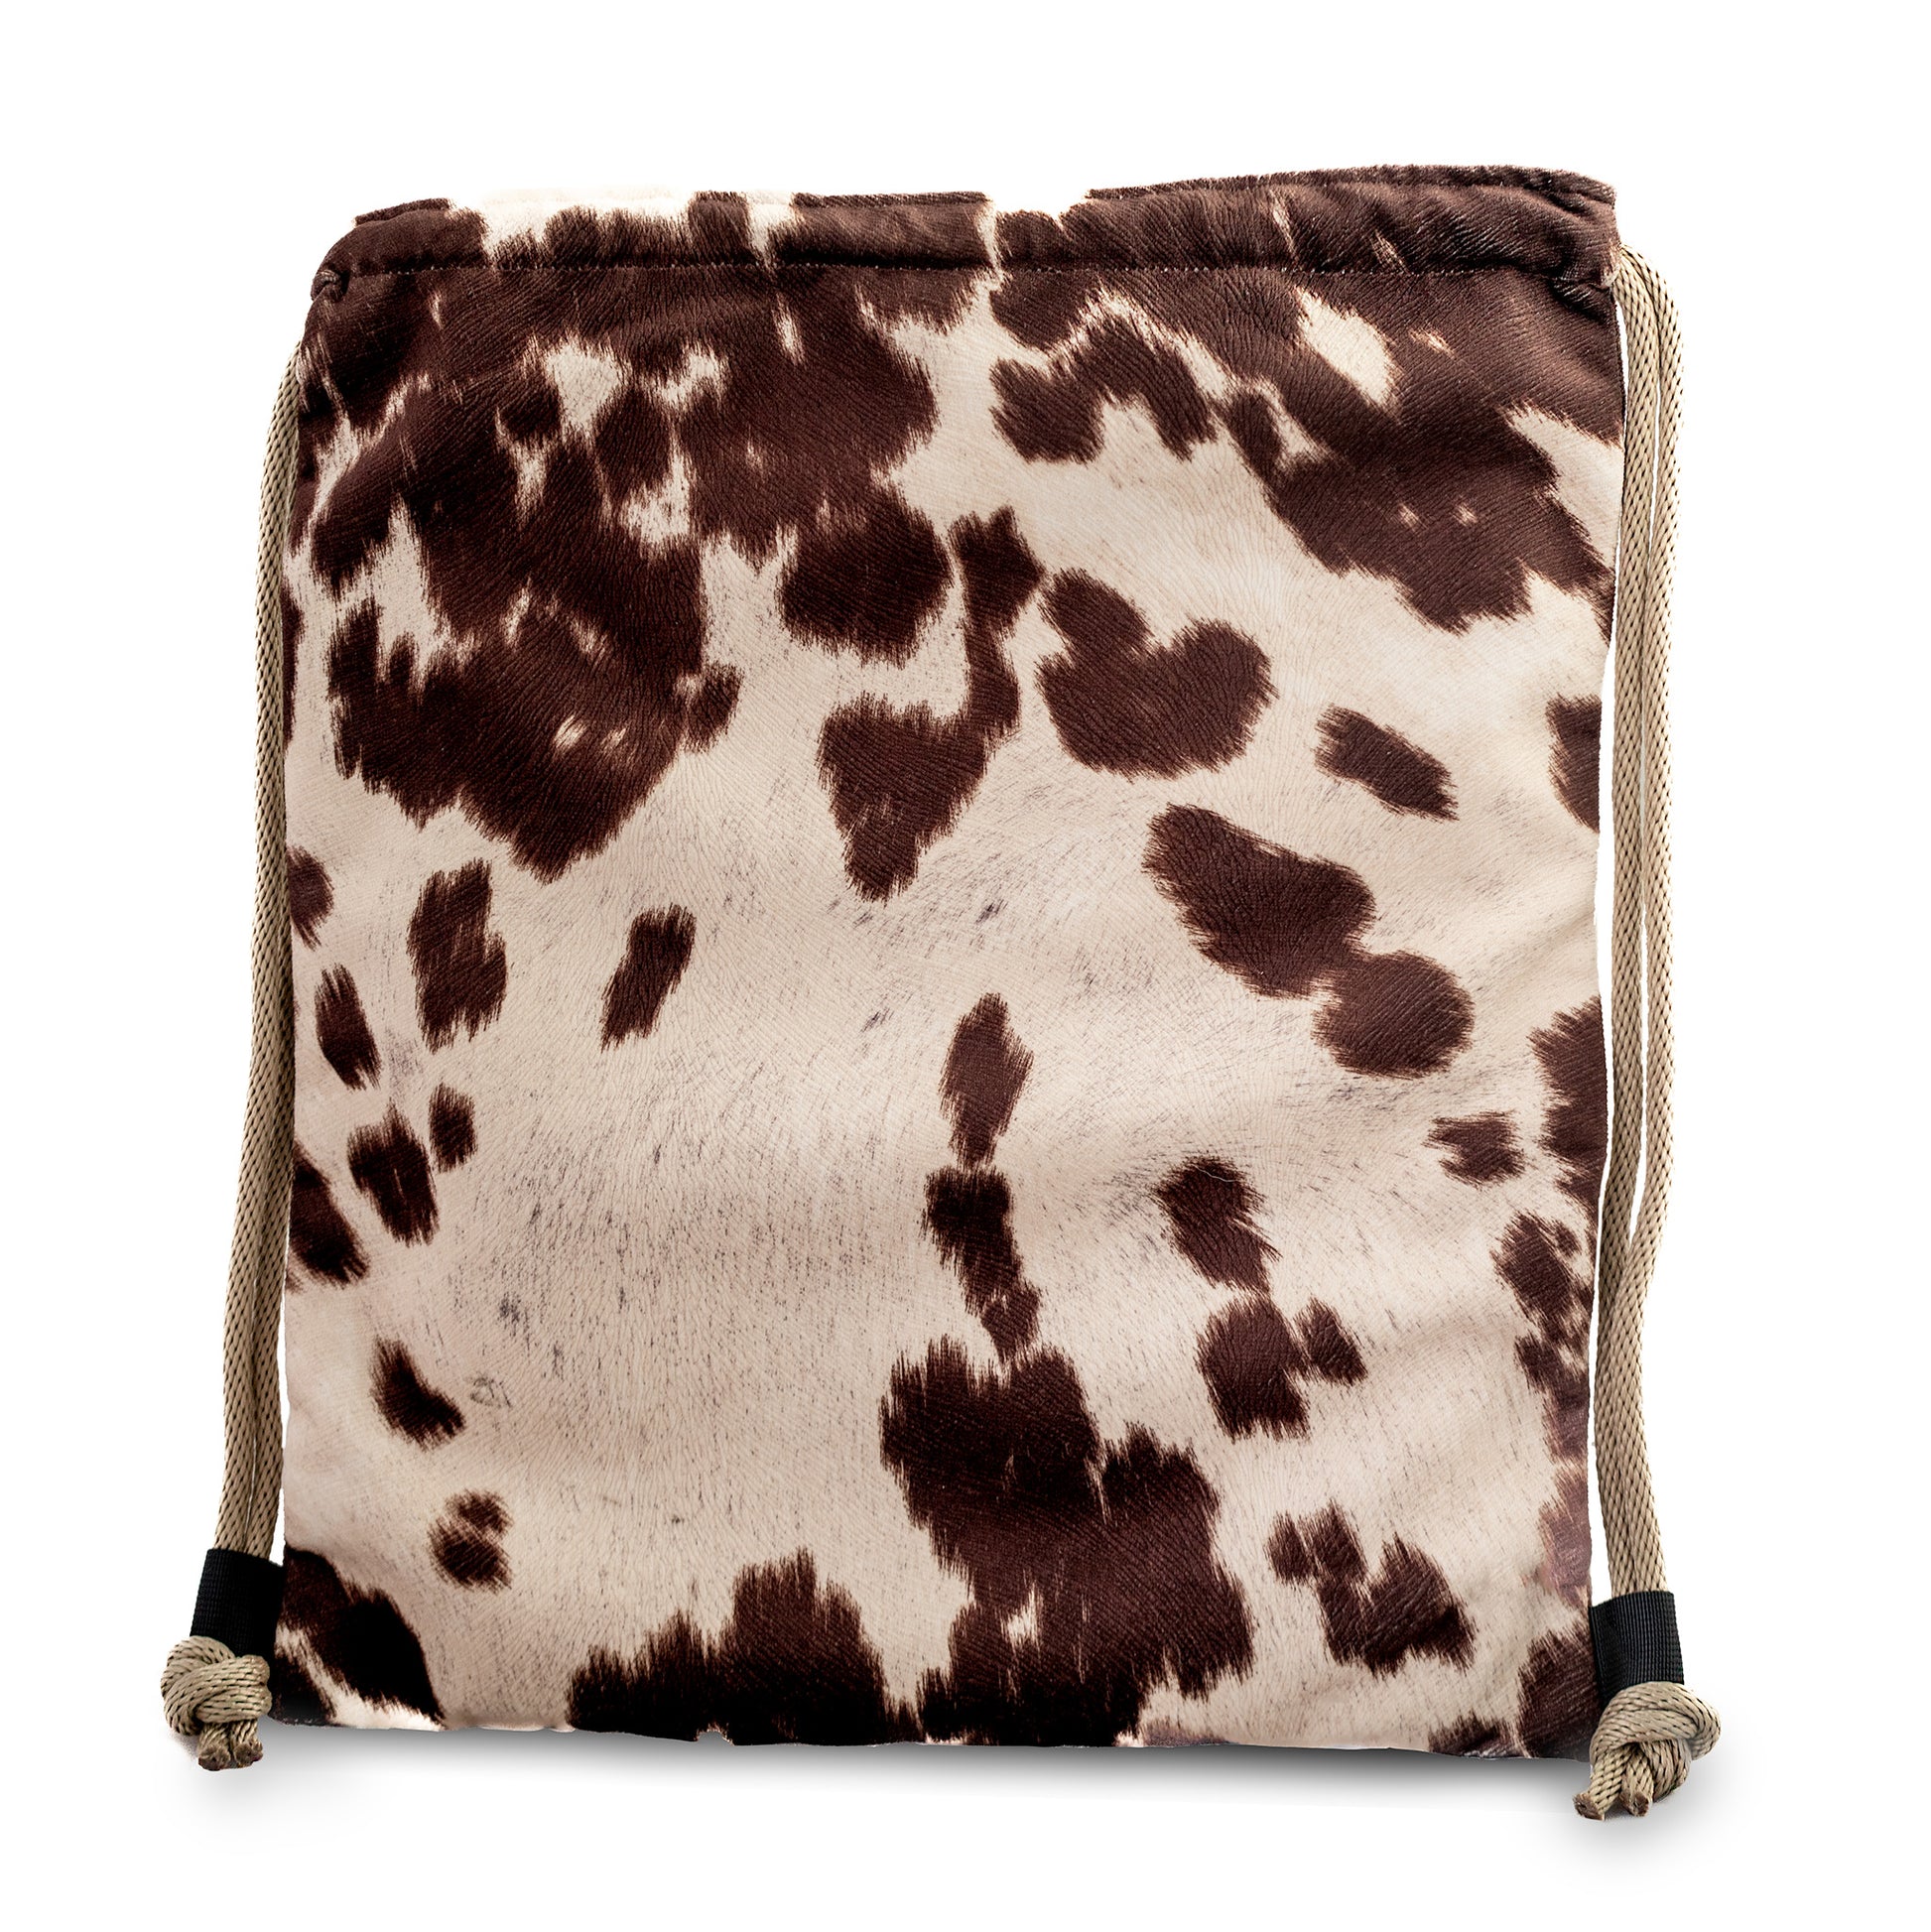 Suede Brown & Tan Cow Pattern Drawstring Cinch Backpack - Niclordesigns